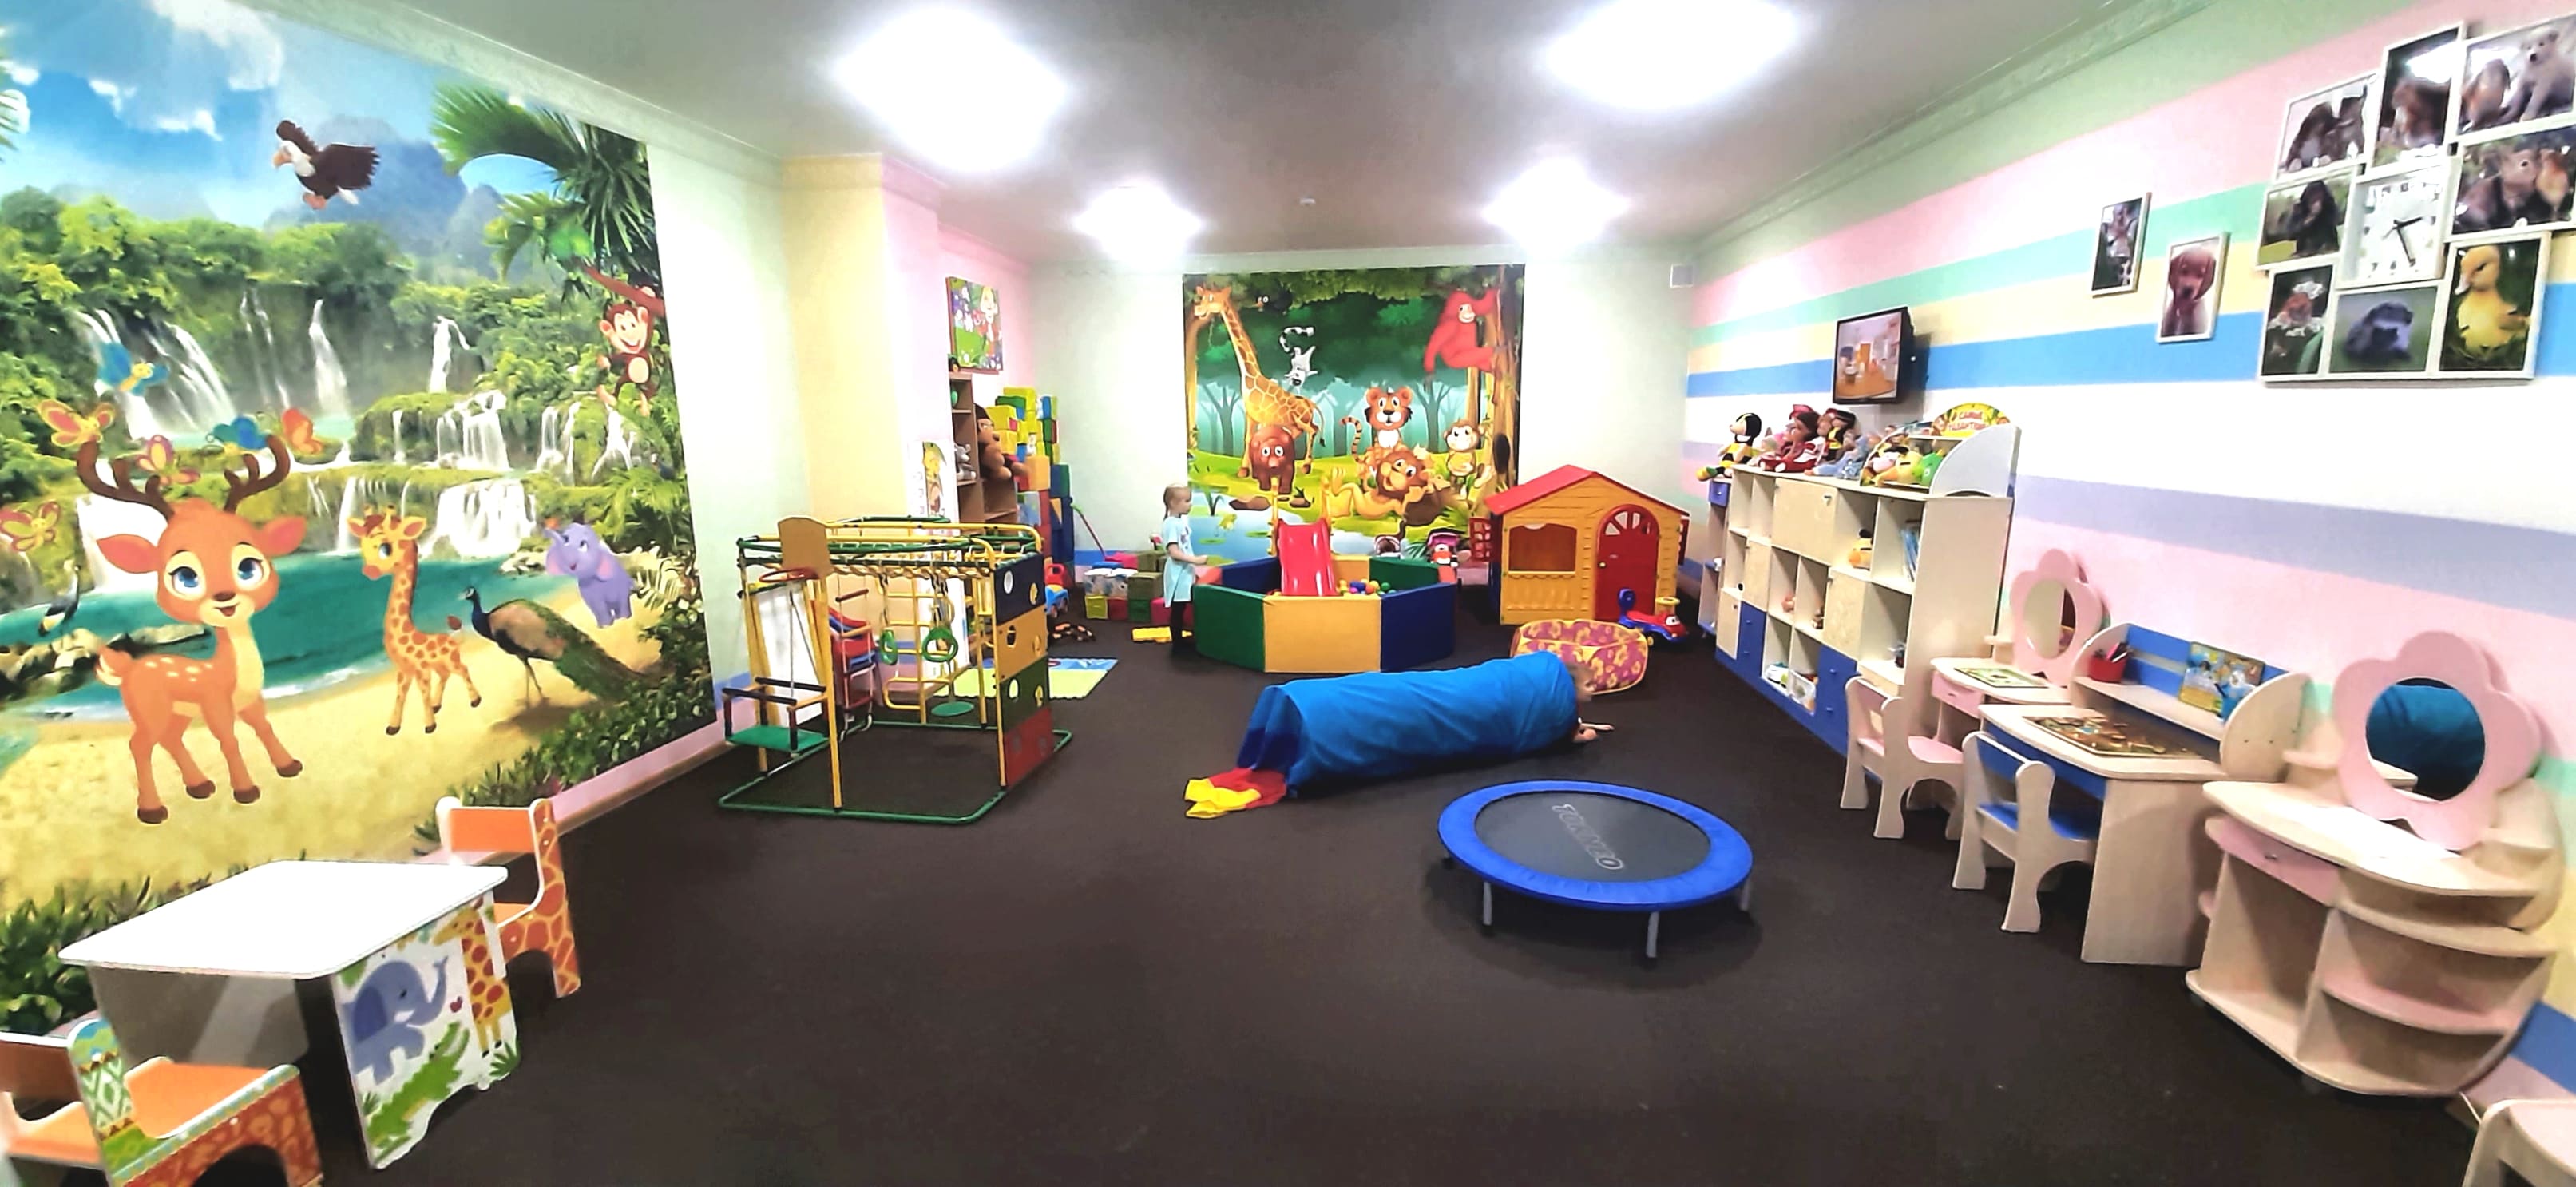 Новая детская игровая комната в санатории "Карагай"